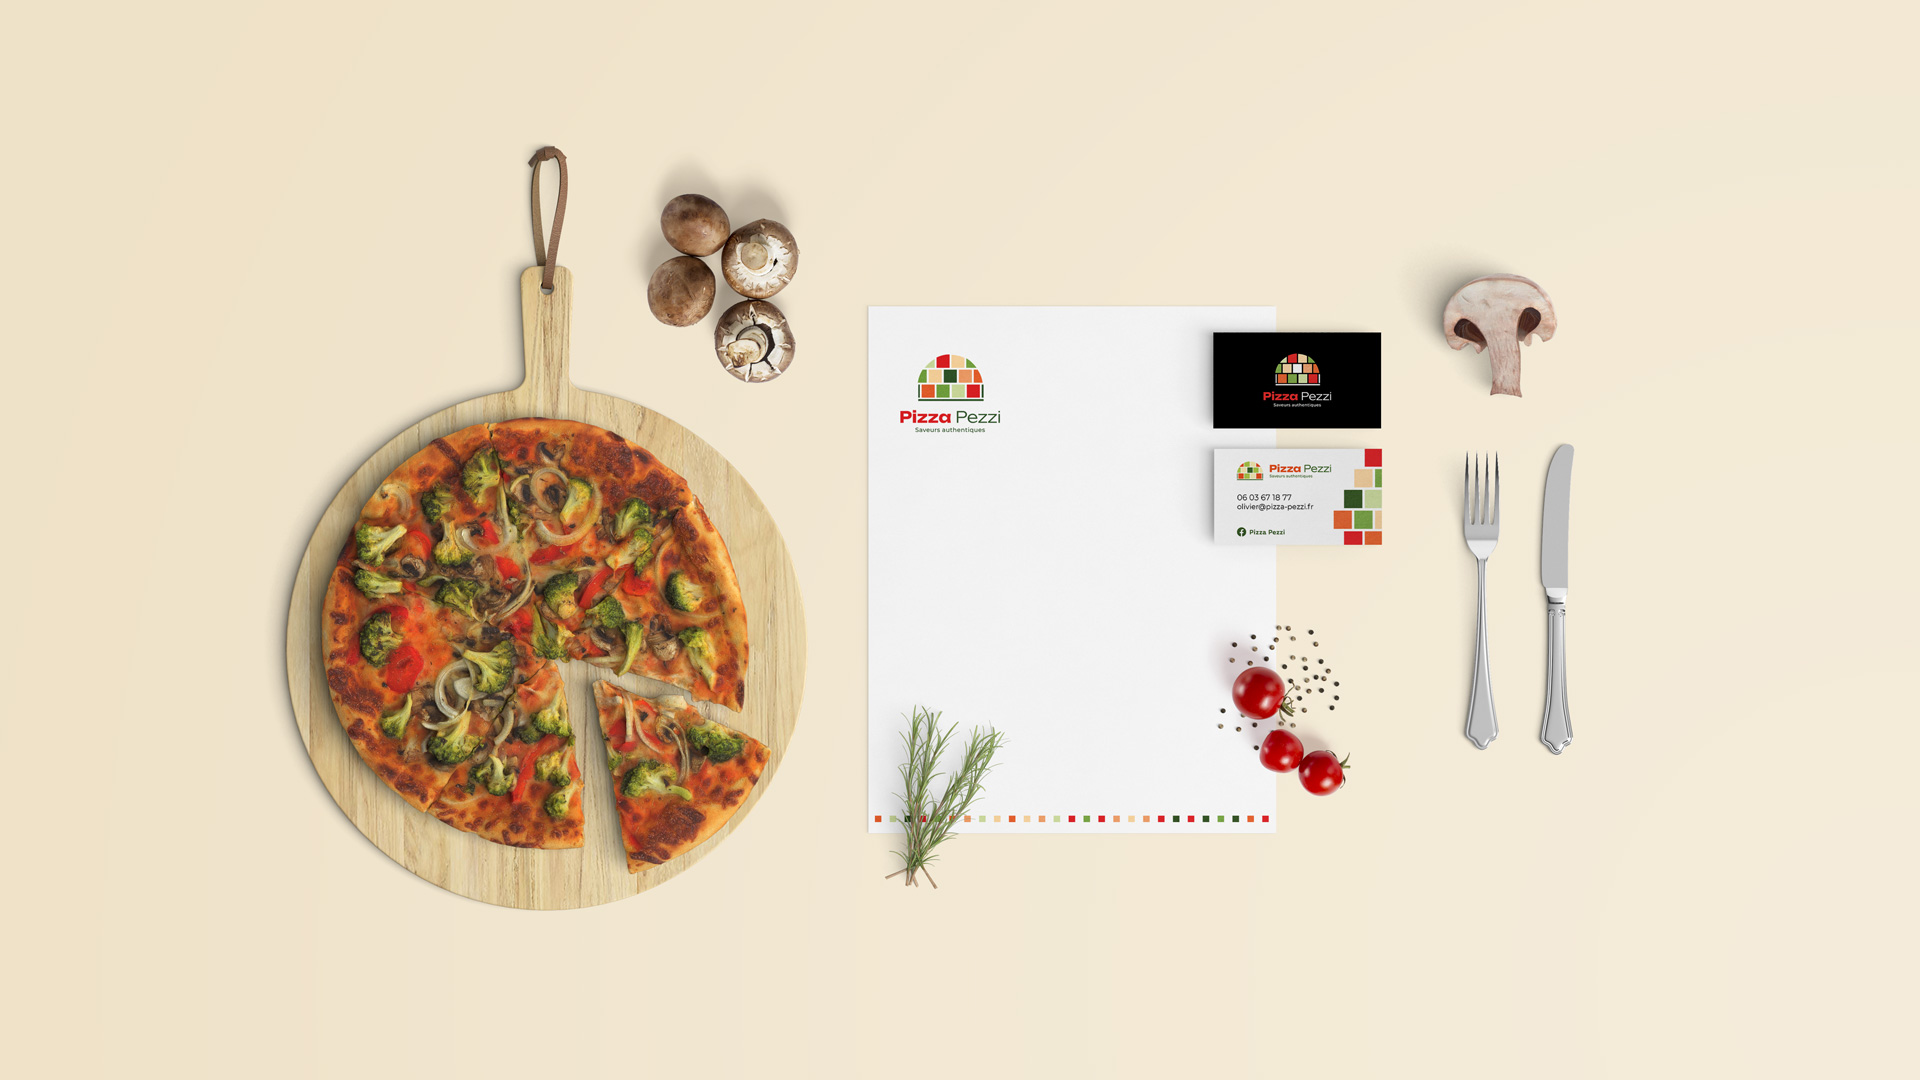 mise en scène du logo pizza pezzi sur des éléments de papeterie avec une pizza